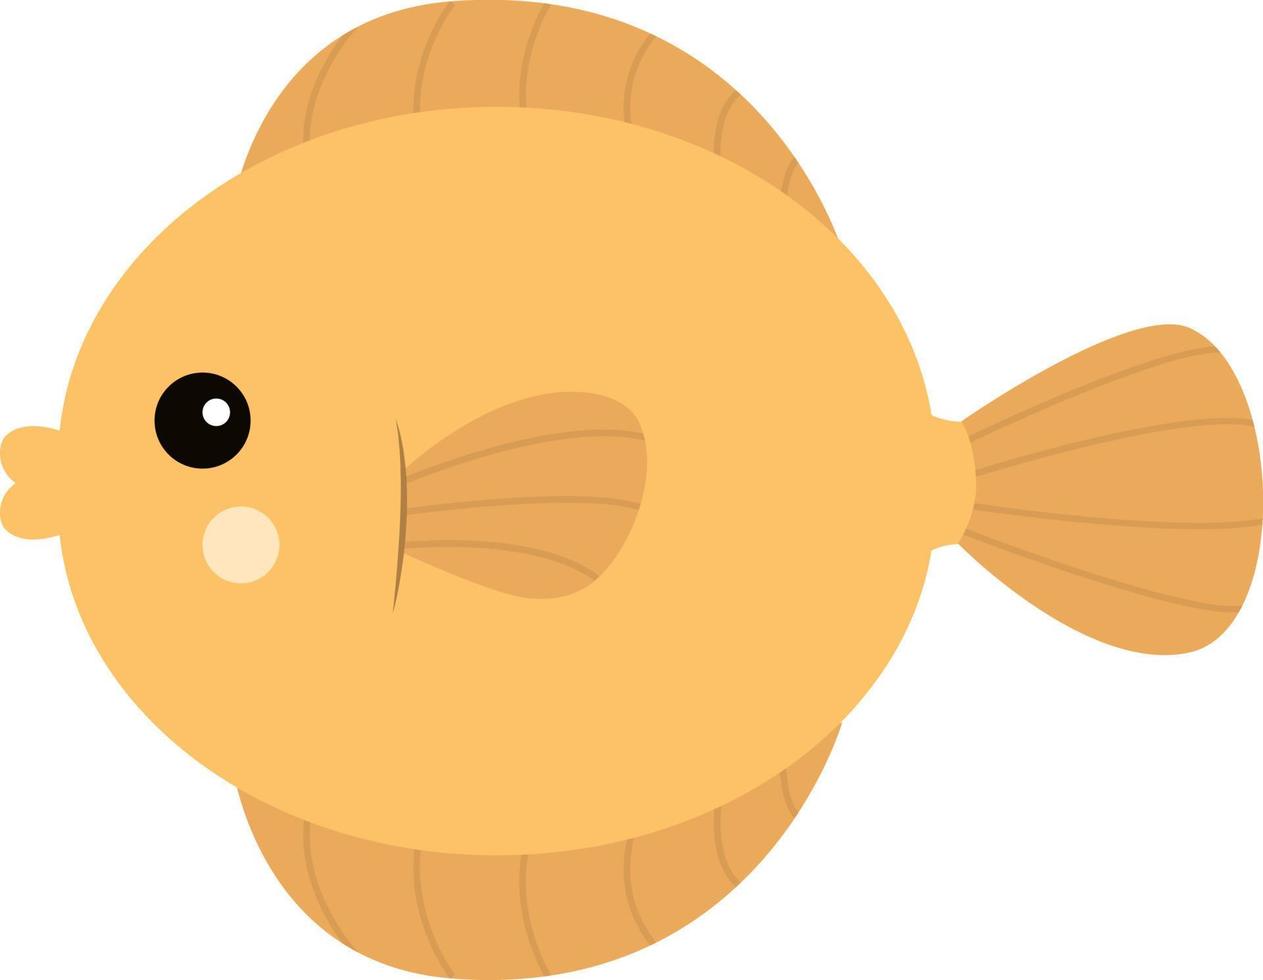 poisson jaune, illustration, vecteur sur fond blanc.